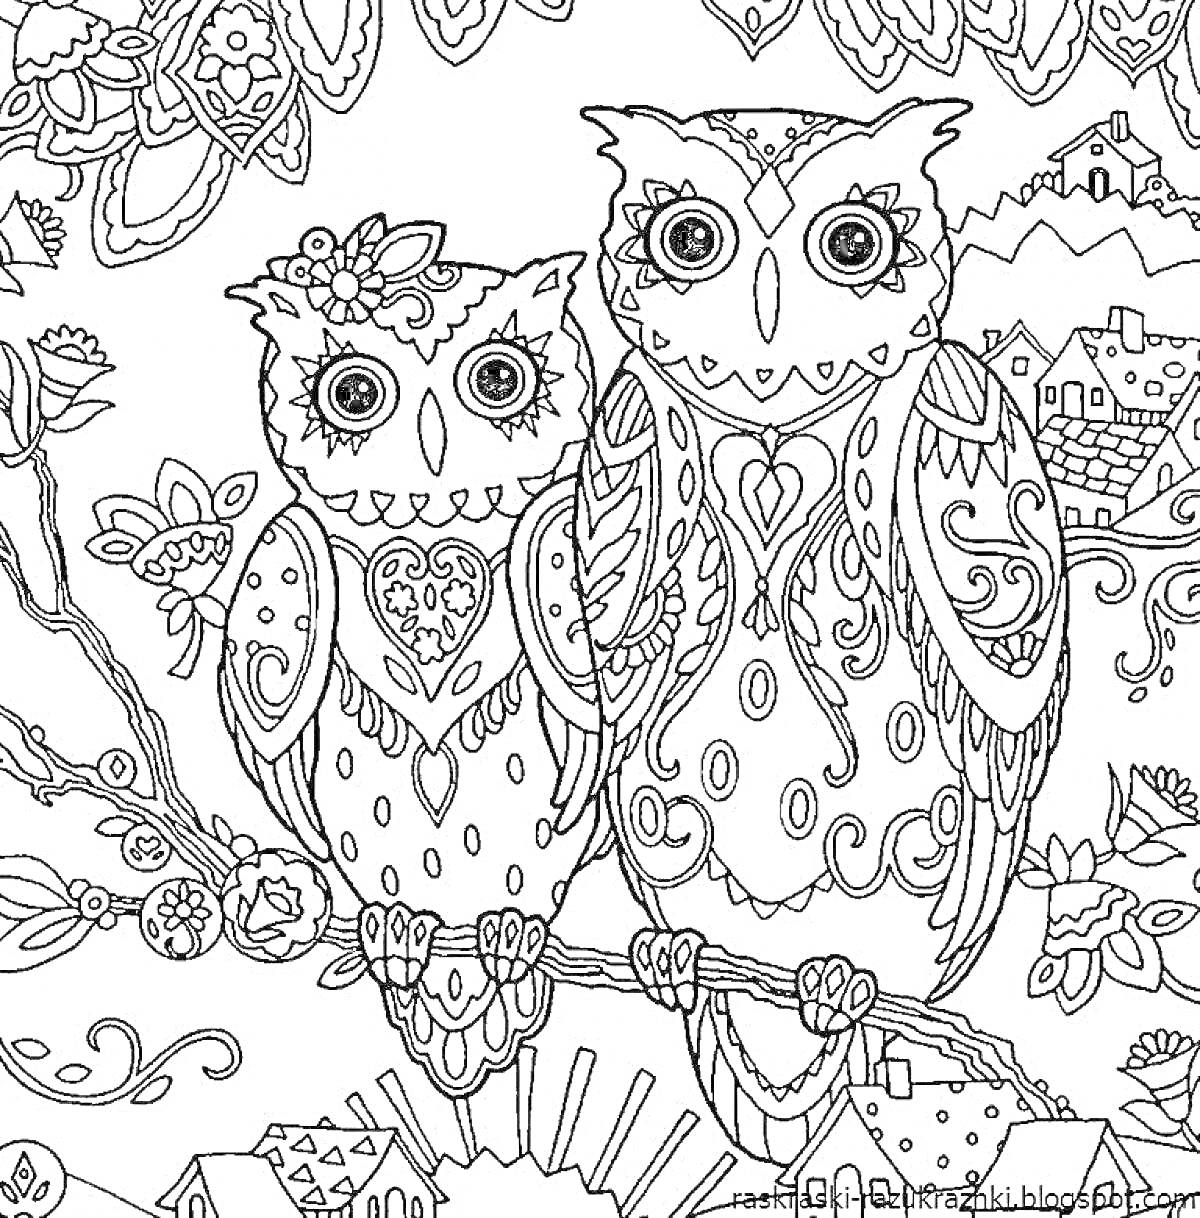 Раскраска Две совы на ветке в окружении узорчатых элементов и домиков